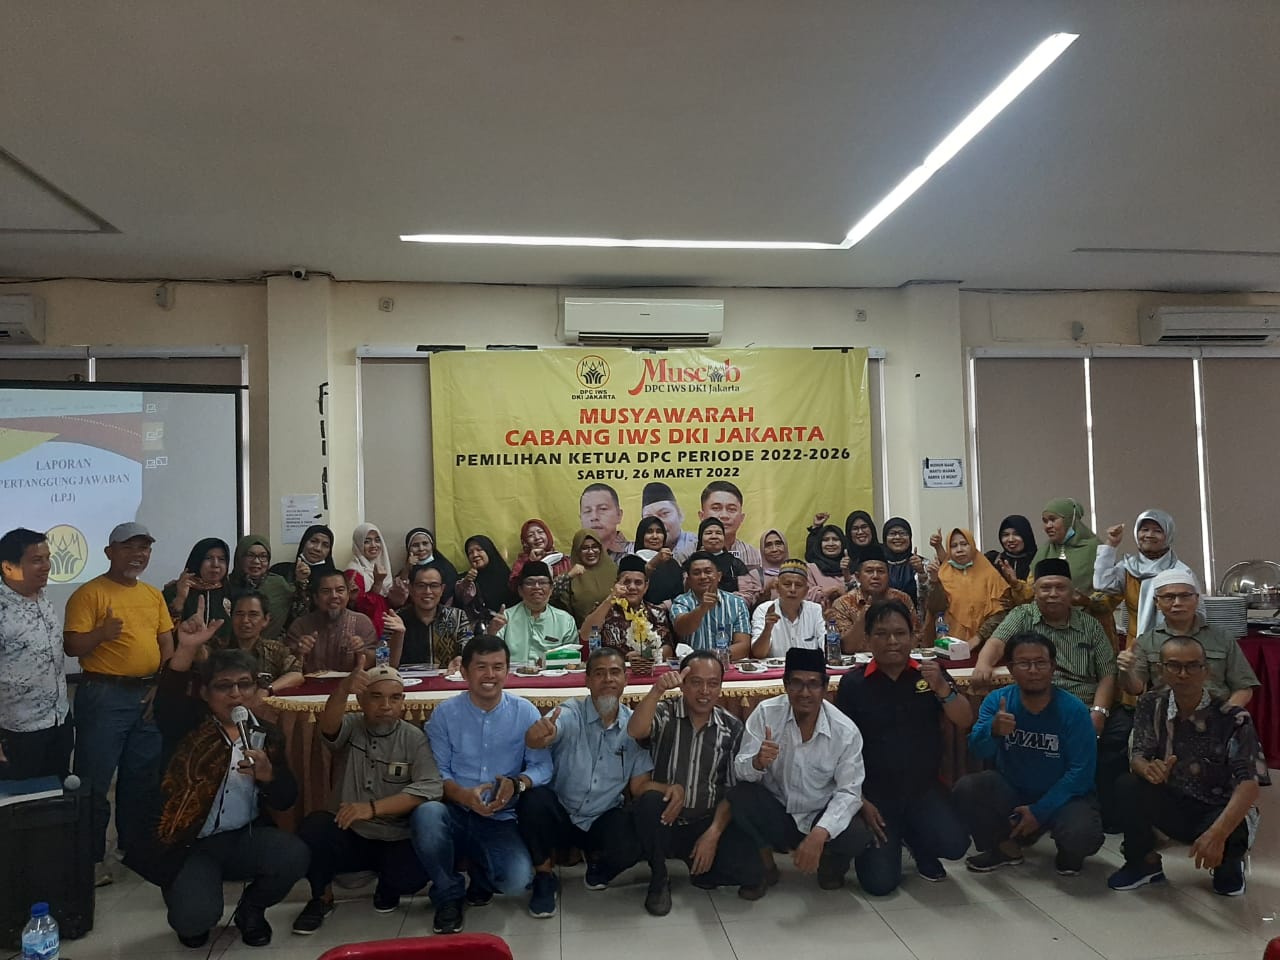 Musyawarah Cabang IWS DKI " Ikatan Warga Saniangbaka" DKI Jakarta